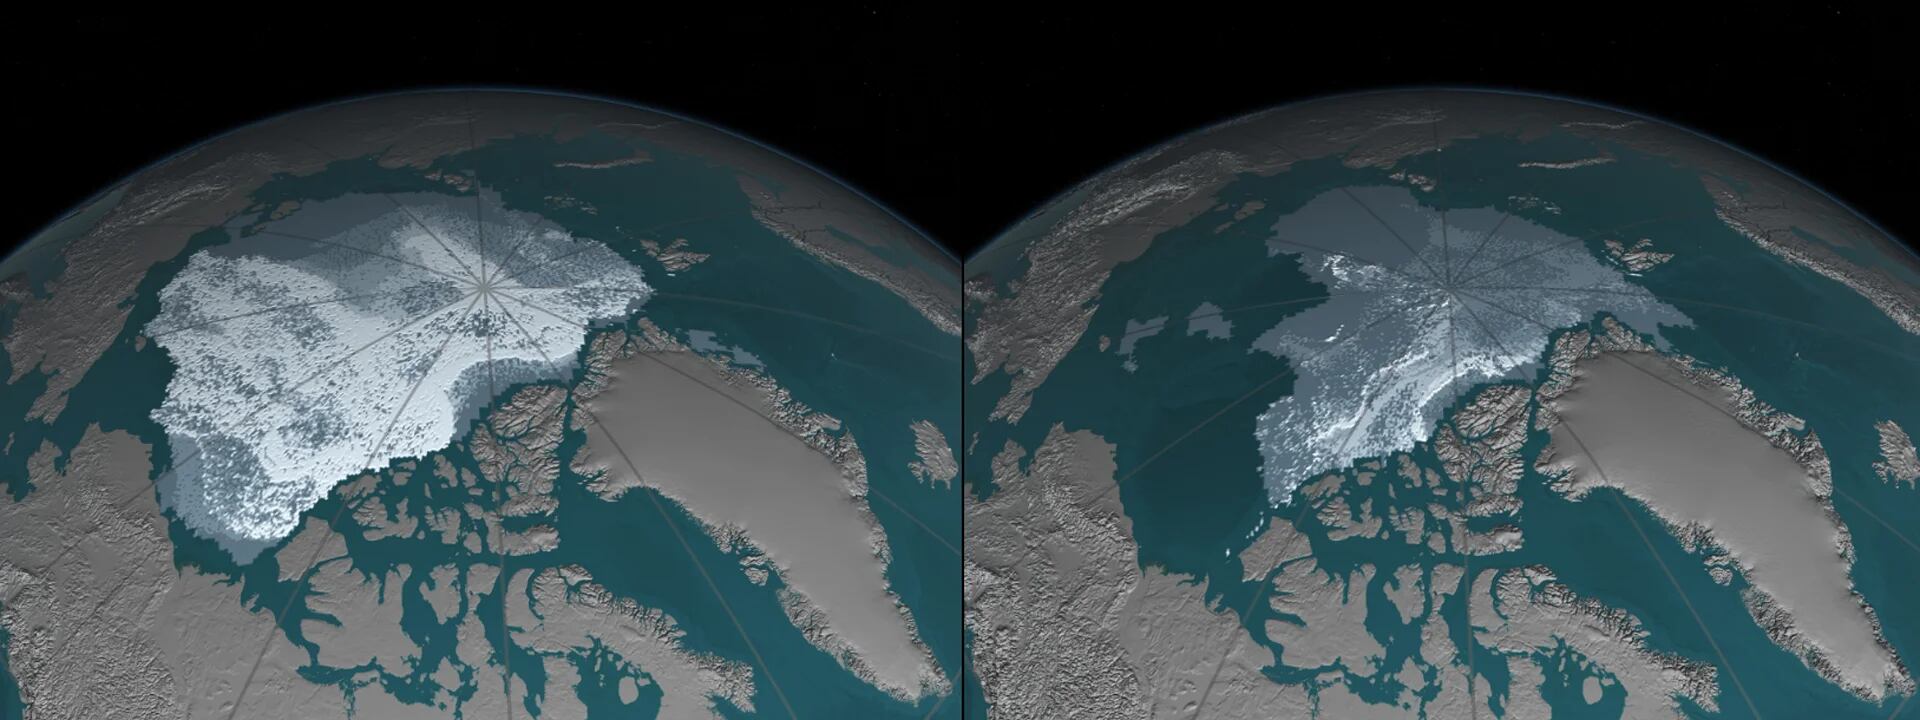 La masa de hielo marino ártico: de septiembre de 1984 a septiembre de 2016